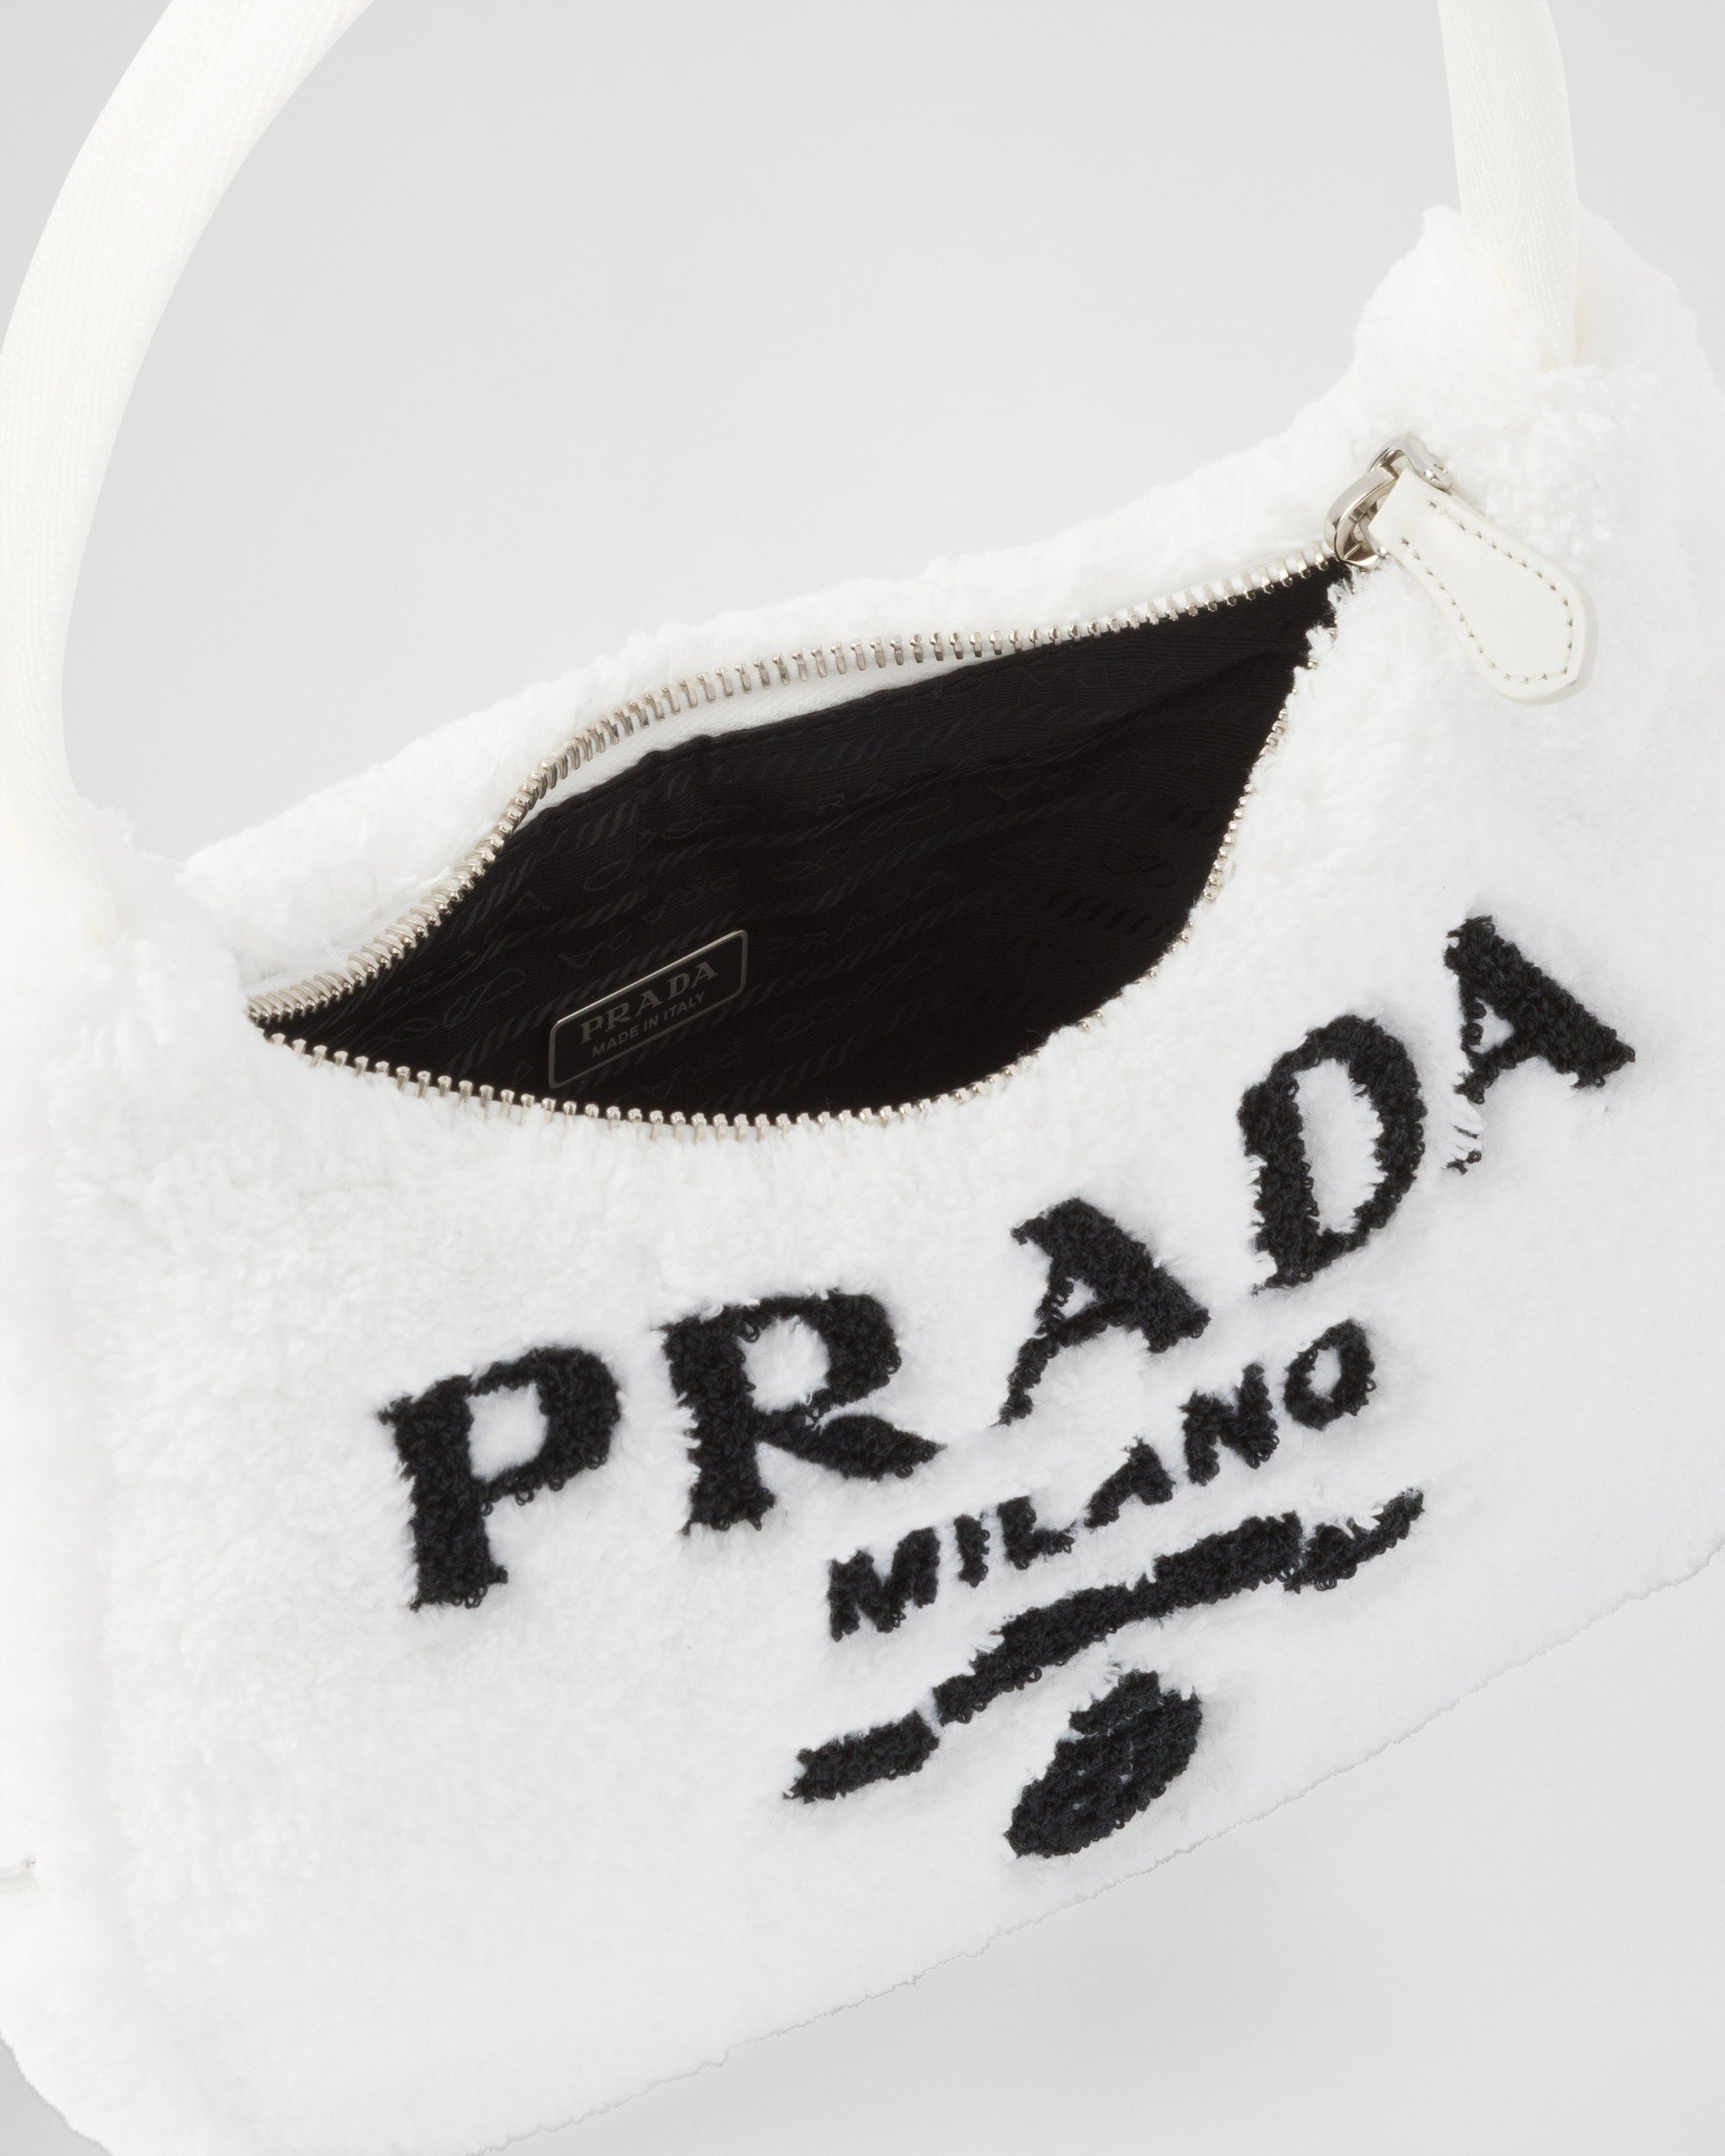 Prada Re-Edition 2000 Terry Mini-Bag White/Black